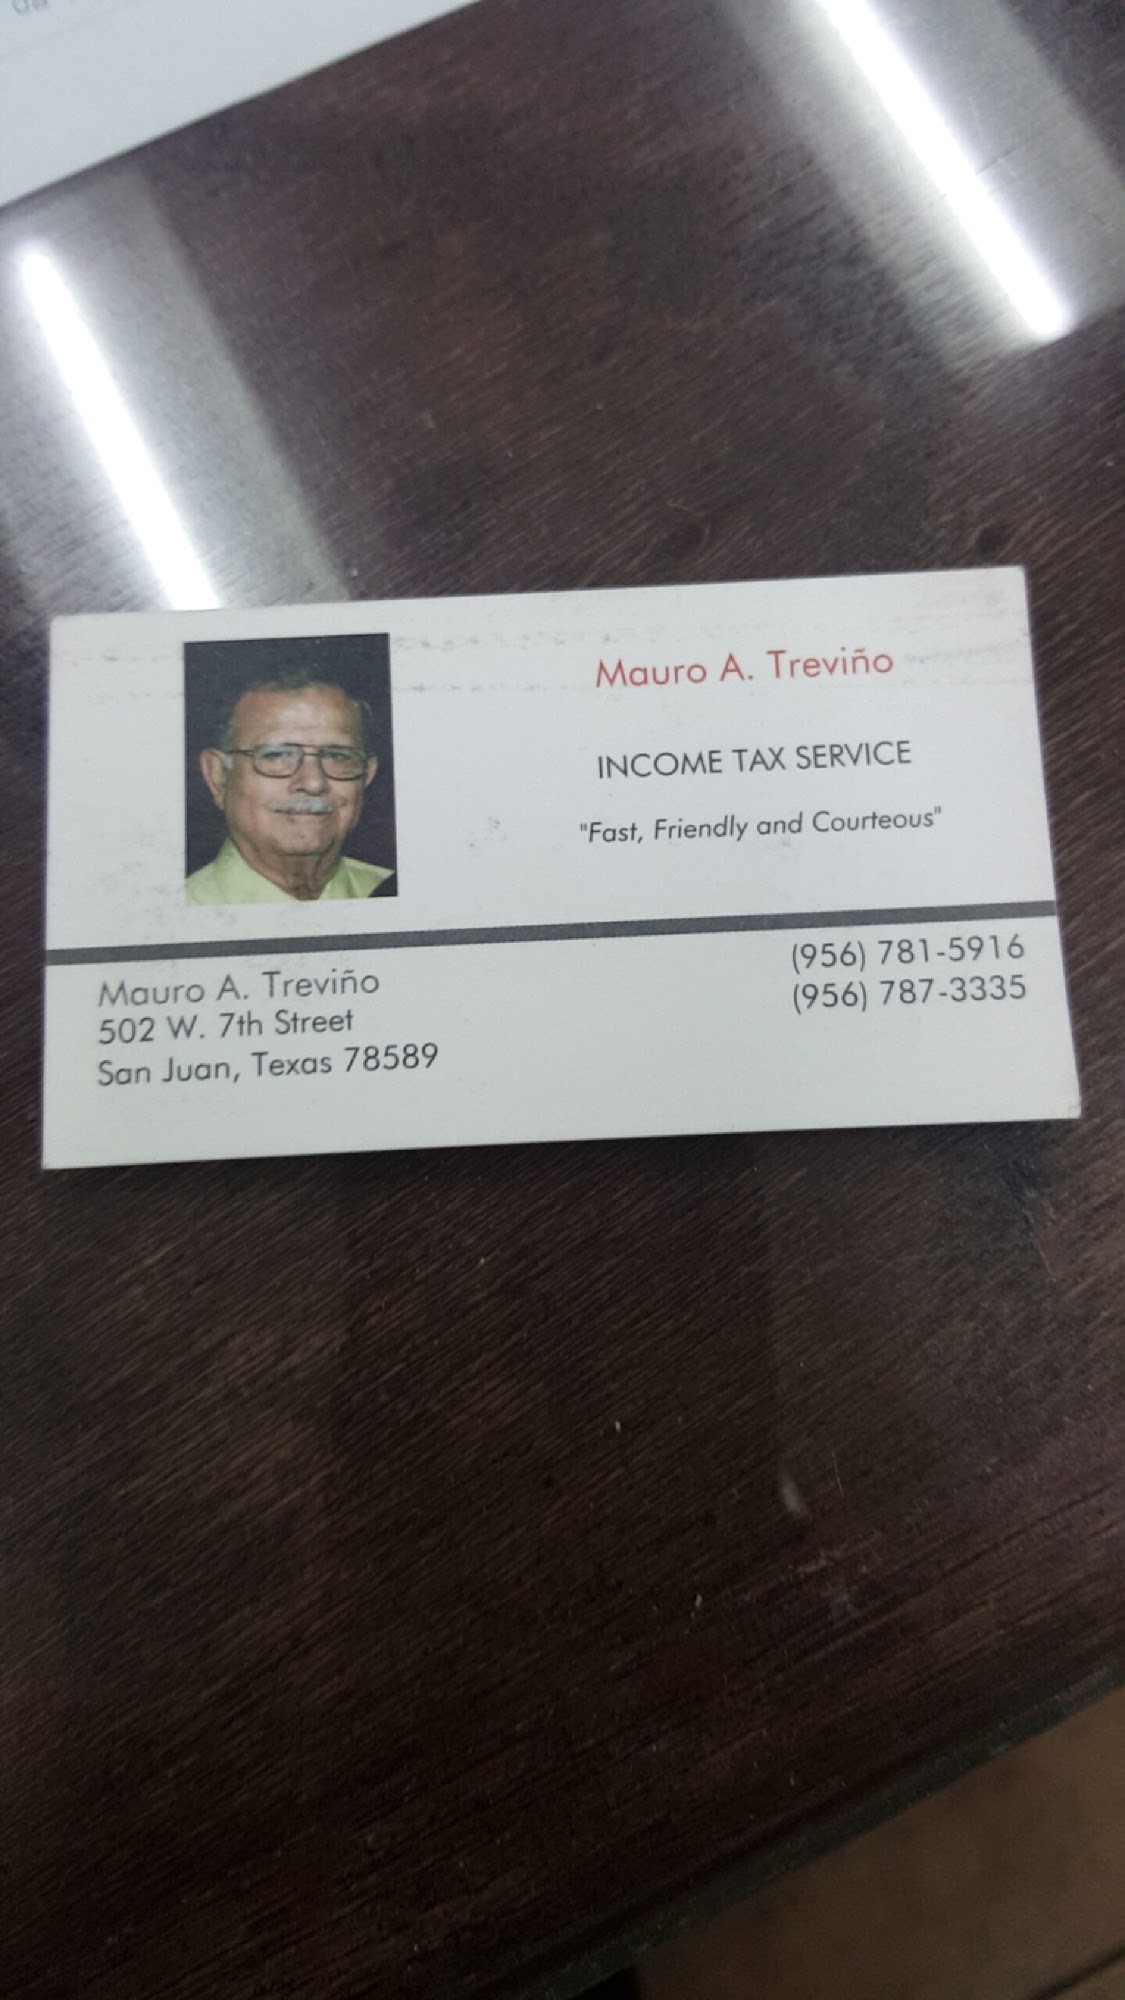 Mauro A. Treviño Income Tax Service